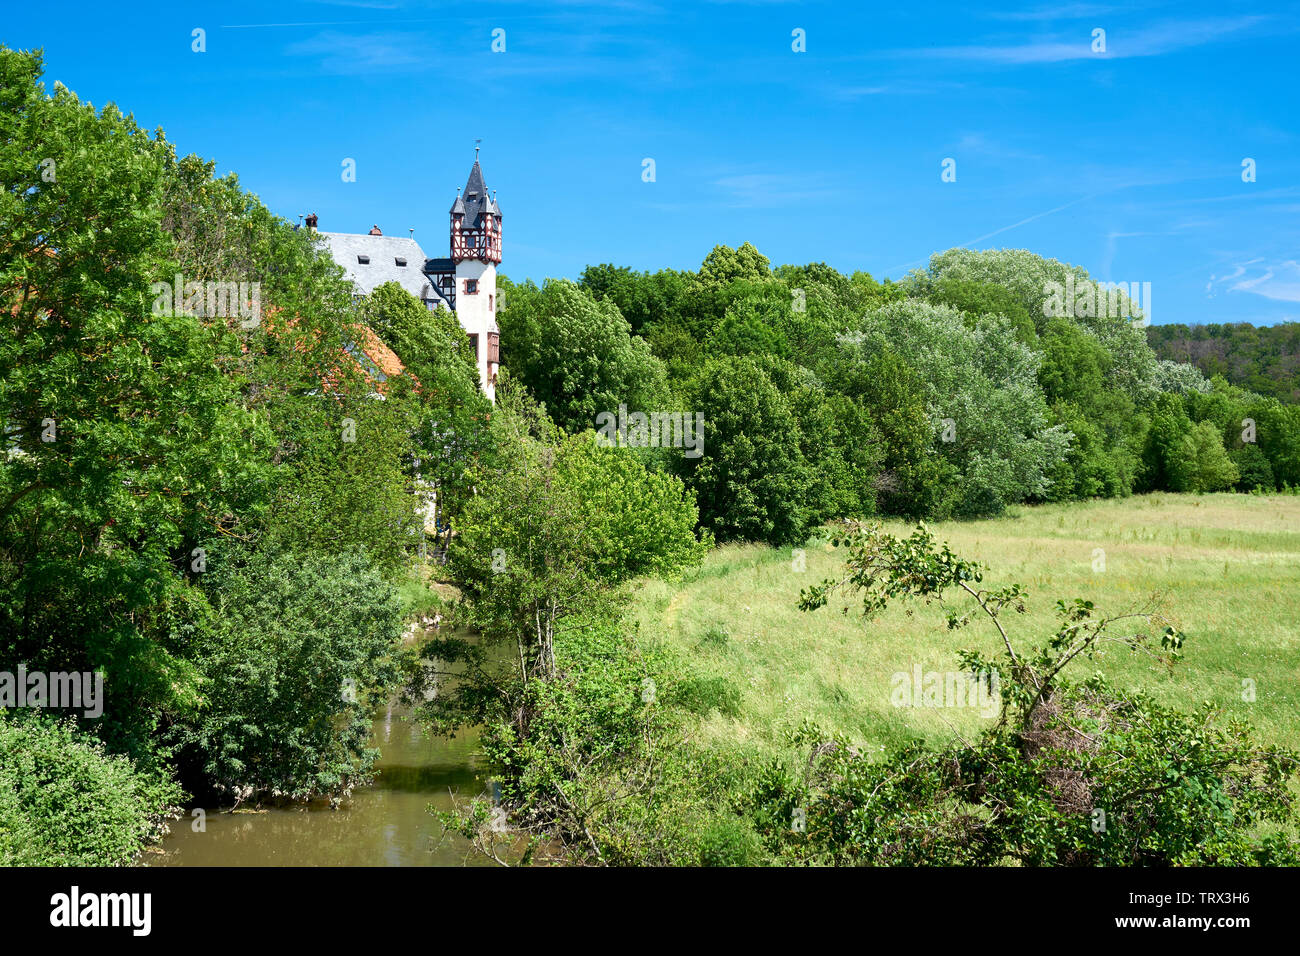 Le nouveau château de Büdesheim sur la rivière Nidder en Allemagne Banque D'Images